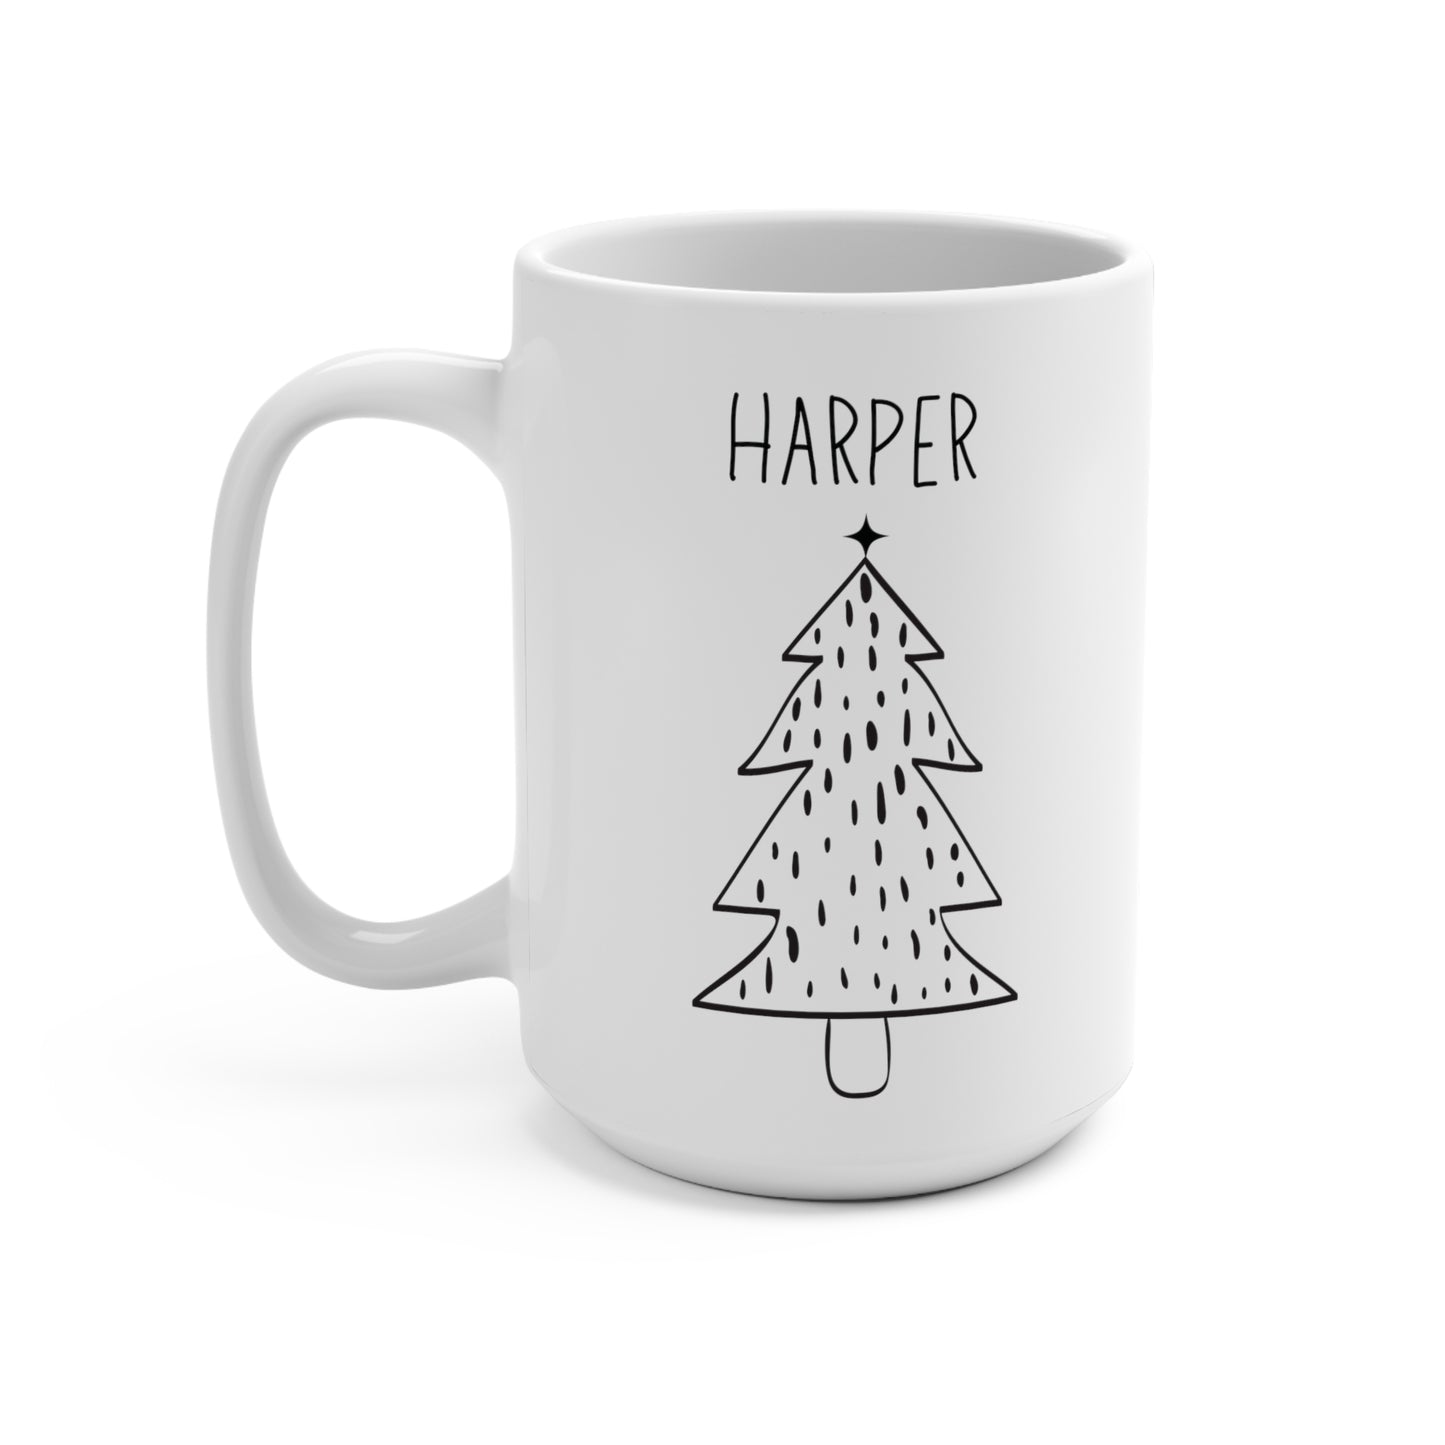 Harper Personalized Custom Christmas Tree Coffee Mug